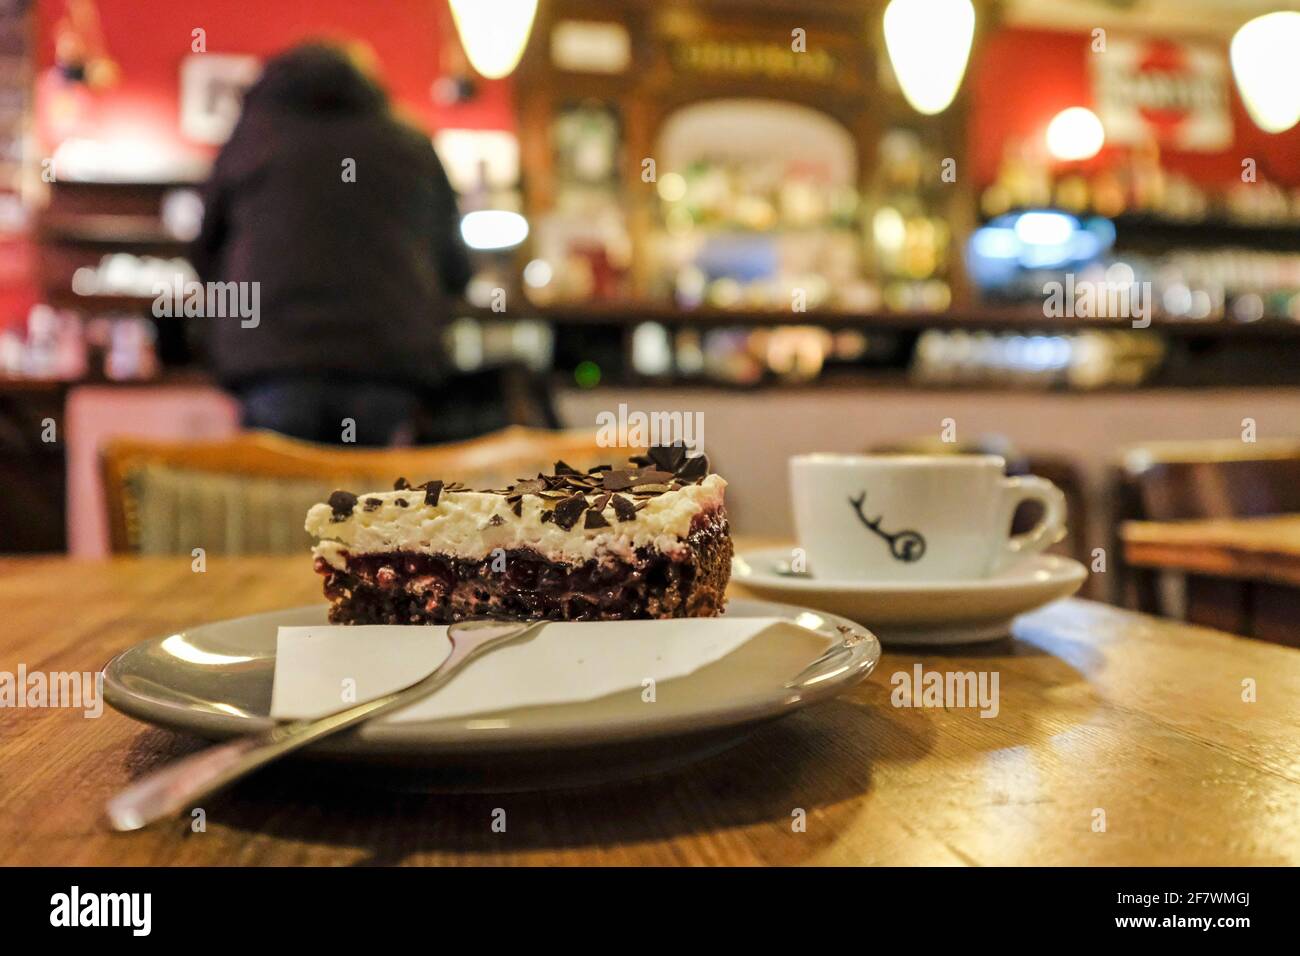 28.01.2020, Essen, Nordrhein-Westfalen, Deutschland - Kaffee und Kuchen in der Zweibar in Essen-Ruettenscheid Stock Photo